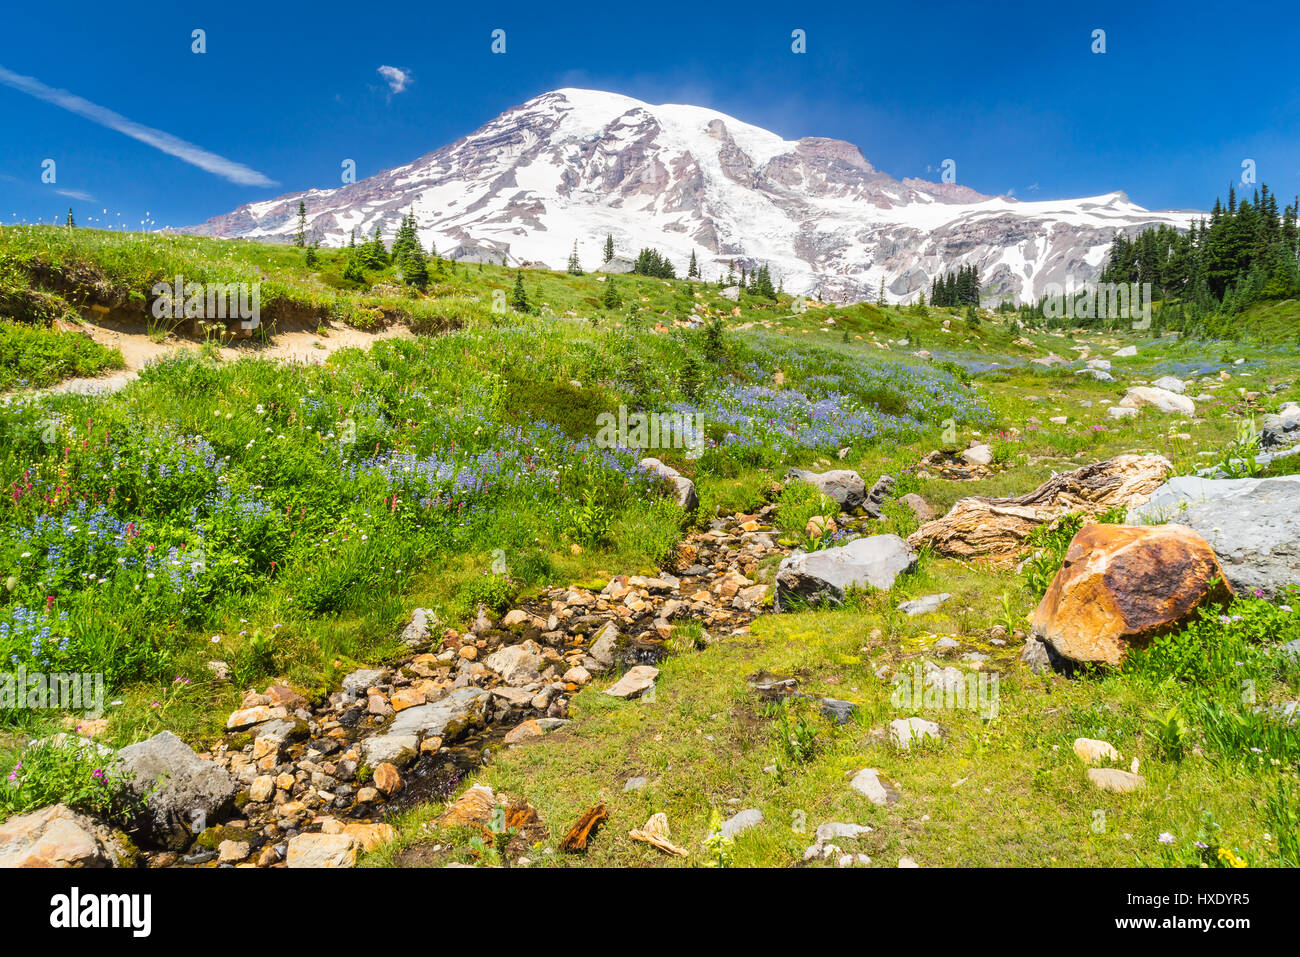 Mount Rainier, Washington con campo de flores silvestres y arroyo en primer plano. Foto de stock